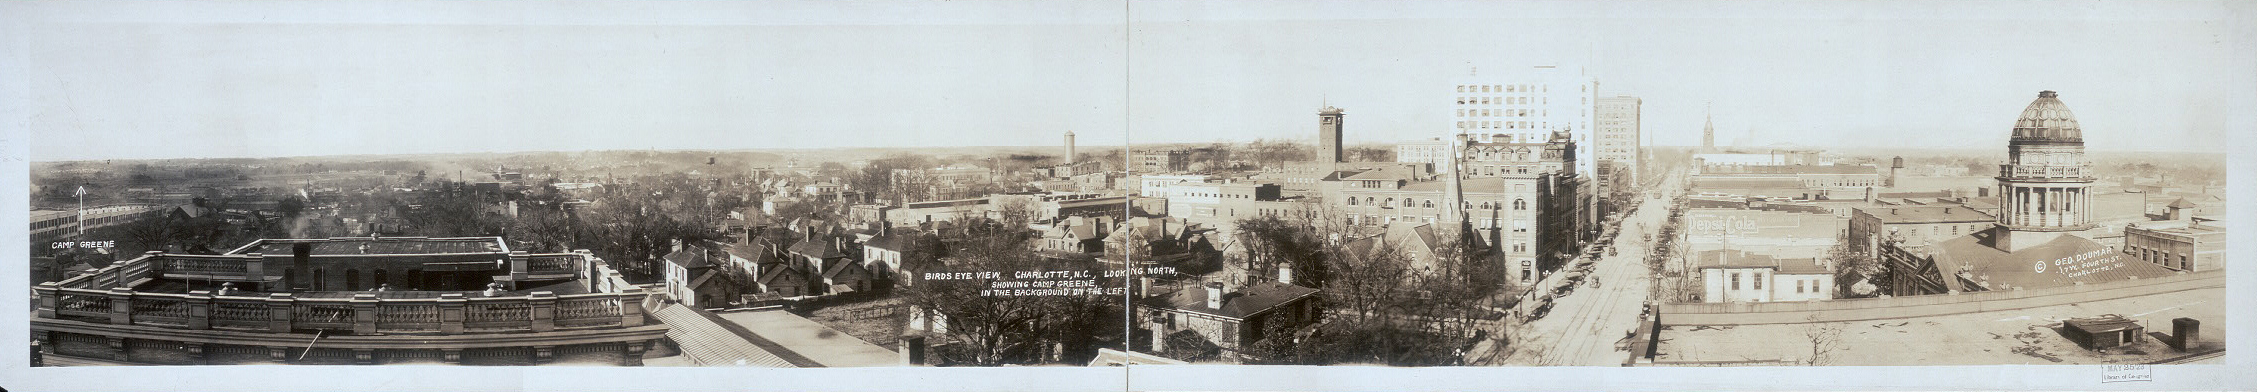 Vista panorámica de la ciudad de Charlotte, Carolina del Norte en c1918.